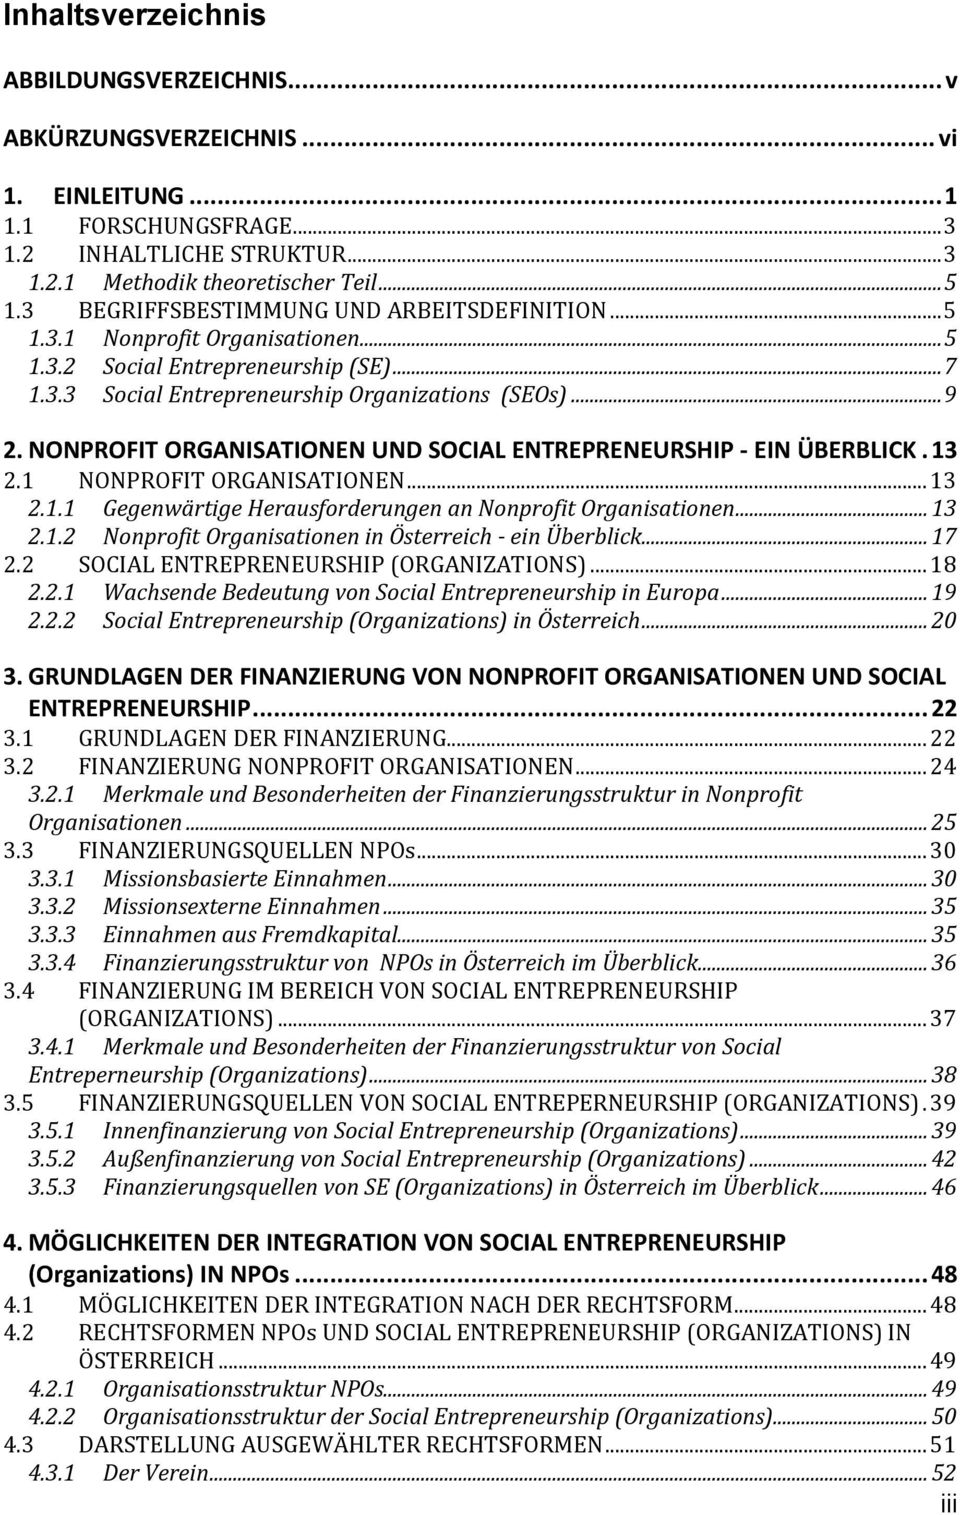 NONPROFIT ORGANISATIONEN UND SOCIAL ENTREPRENEURSHIP - EIN ÜBERBLICK. 13 2.1 NONPROFIT ORGANISATIONEN... 13 2.1.1 Gegenwärtige Herausforderungen an Nonprofit Organisationen... 13 2.1.2 Nonprofit Organisationen in Österreich - ein Überblick.